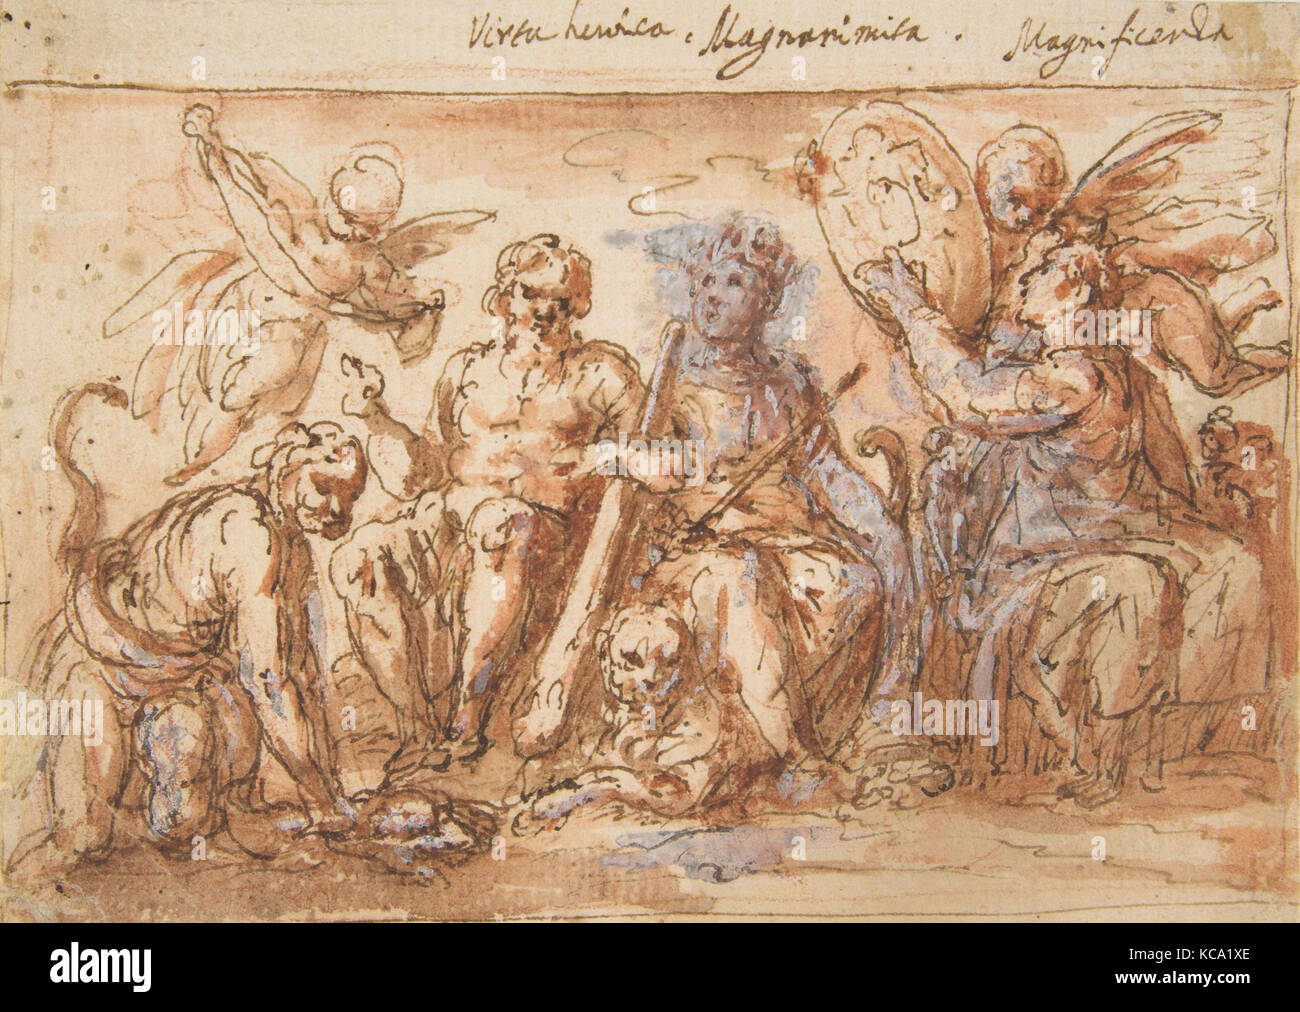 Les figures allégoriques : Force, Hercules d'étrangler l'Hydre, l'abondance, et de la renommée, Bernardino Rodriguez, 1600-1650 Banque D'Images